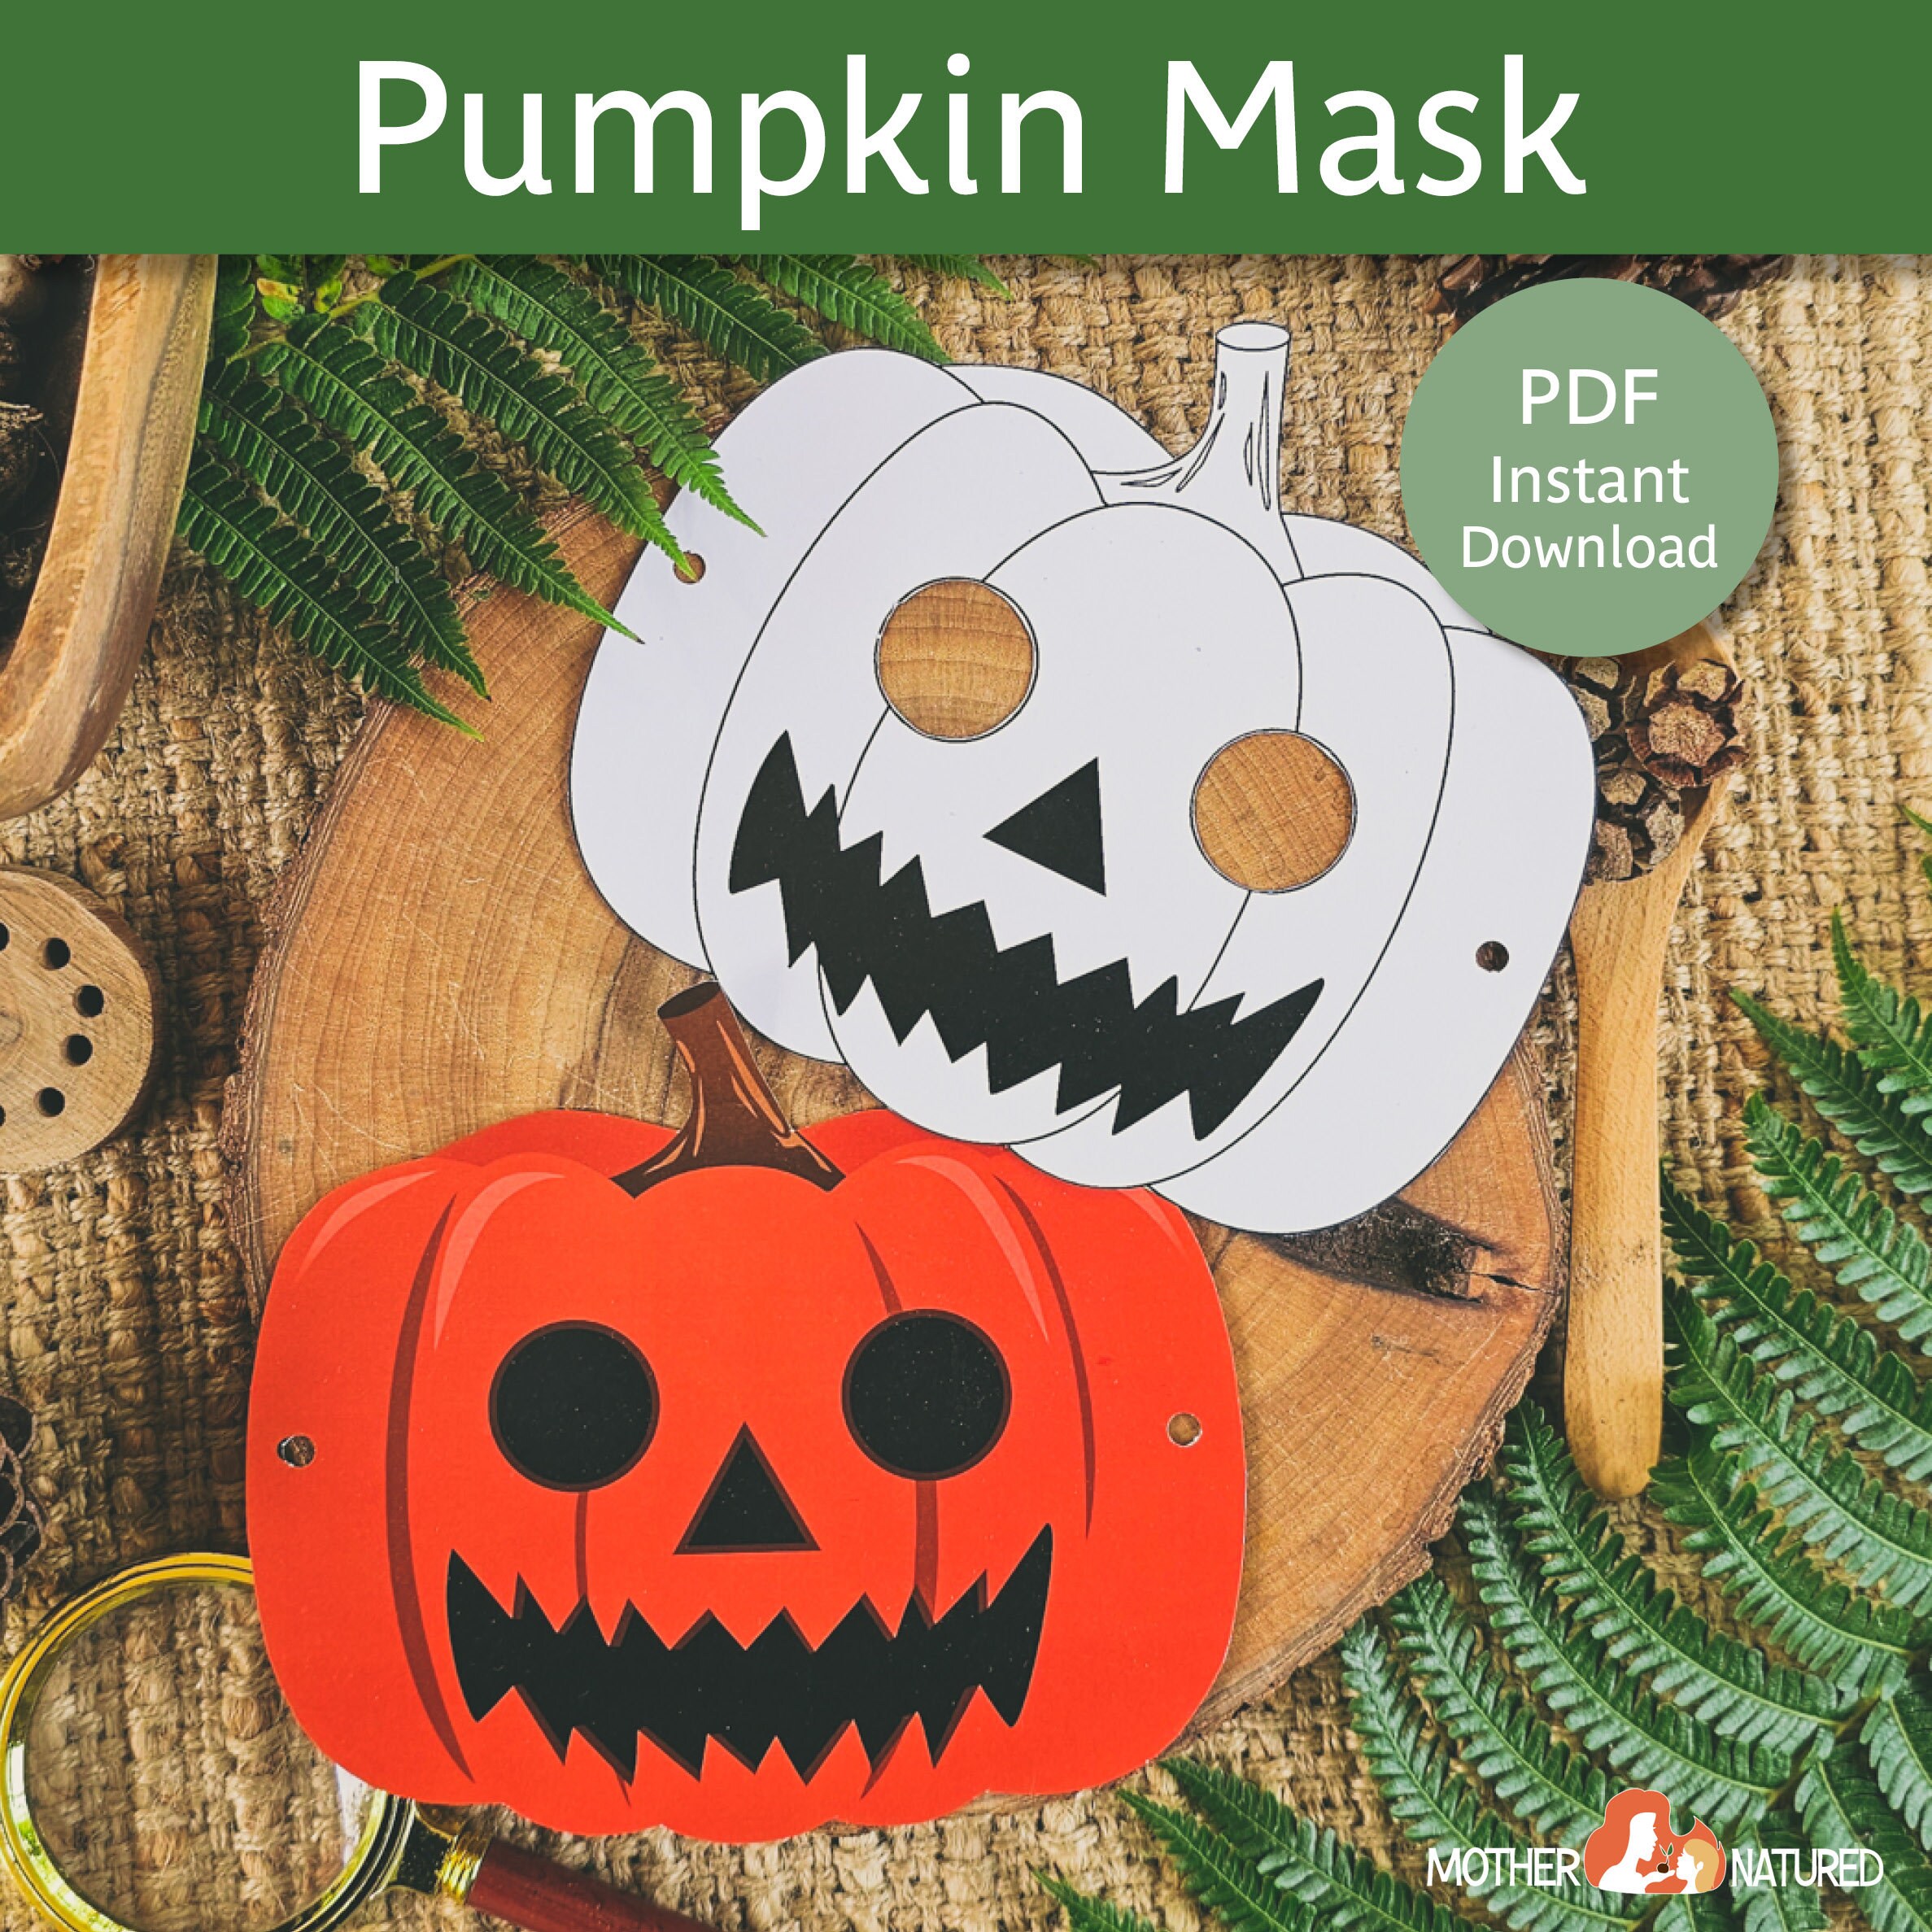 Pumpkin Mask Printable Pumpkin Mask Halloween Pumpkin Mask Scary